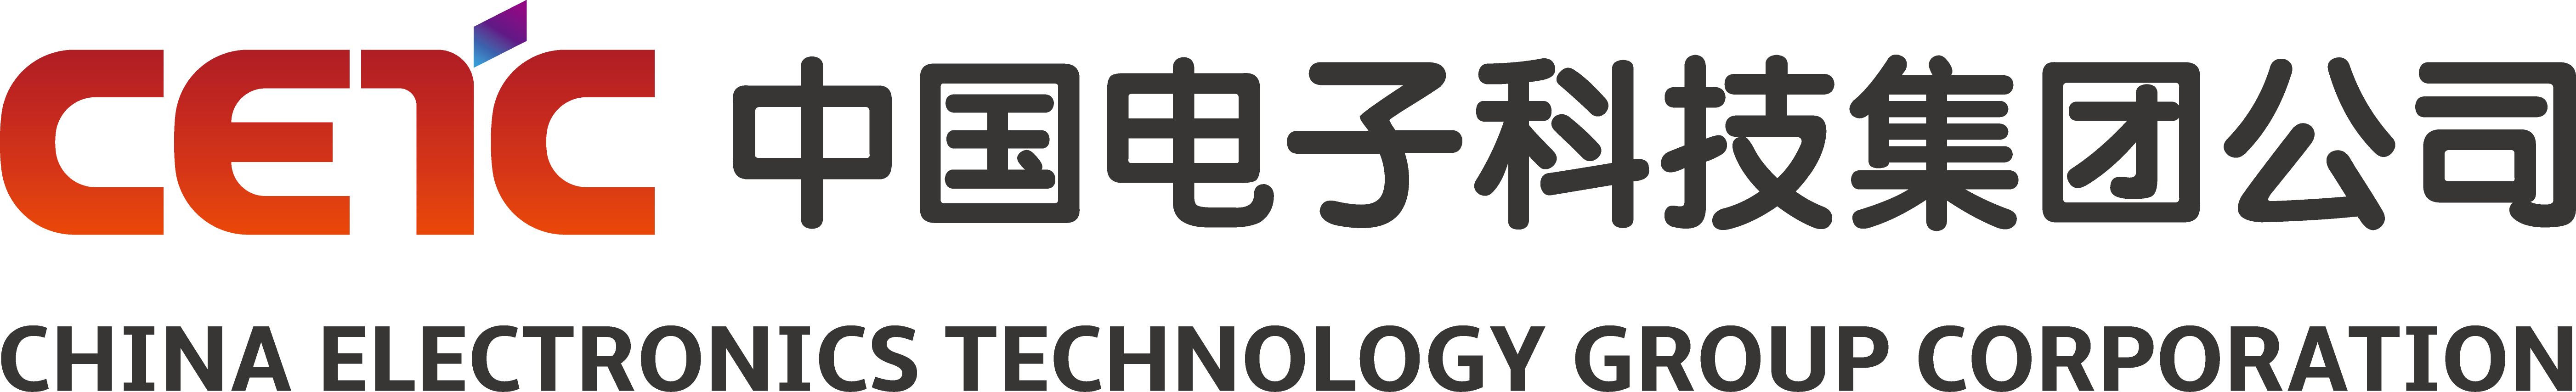 中国电子科技集团公司     中国电子科技集团公司(简称中国电科)是经